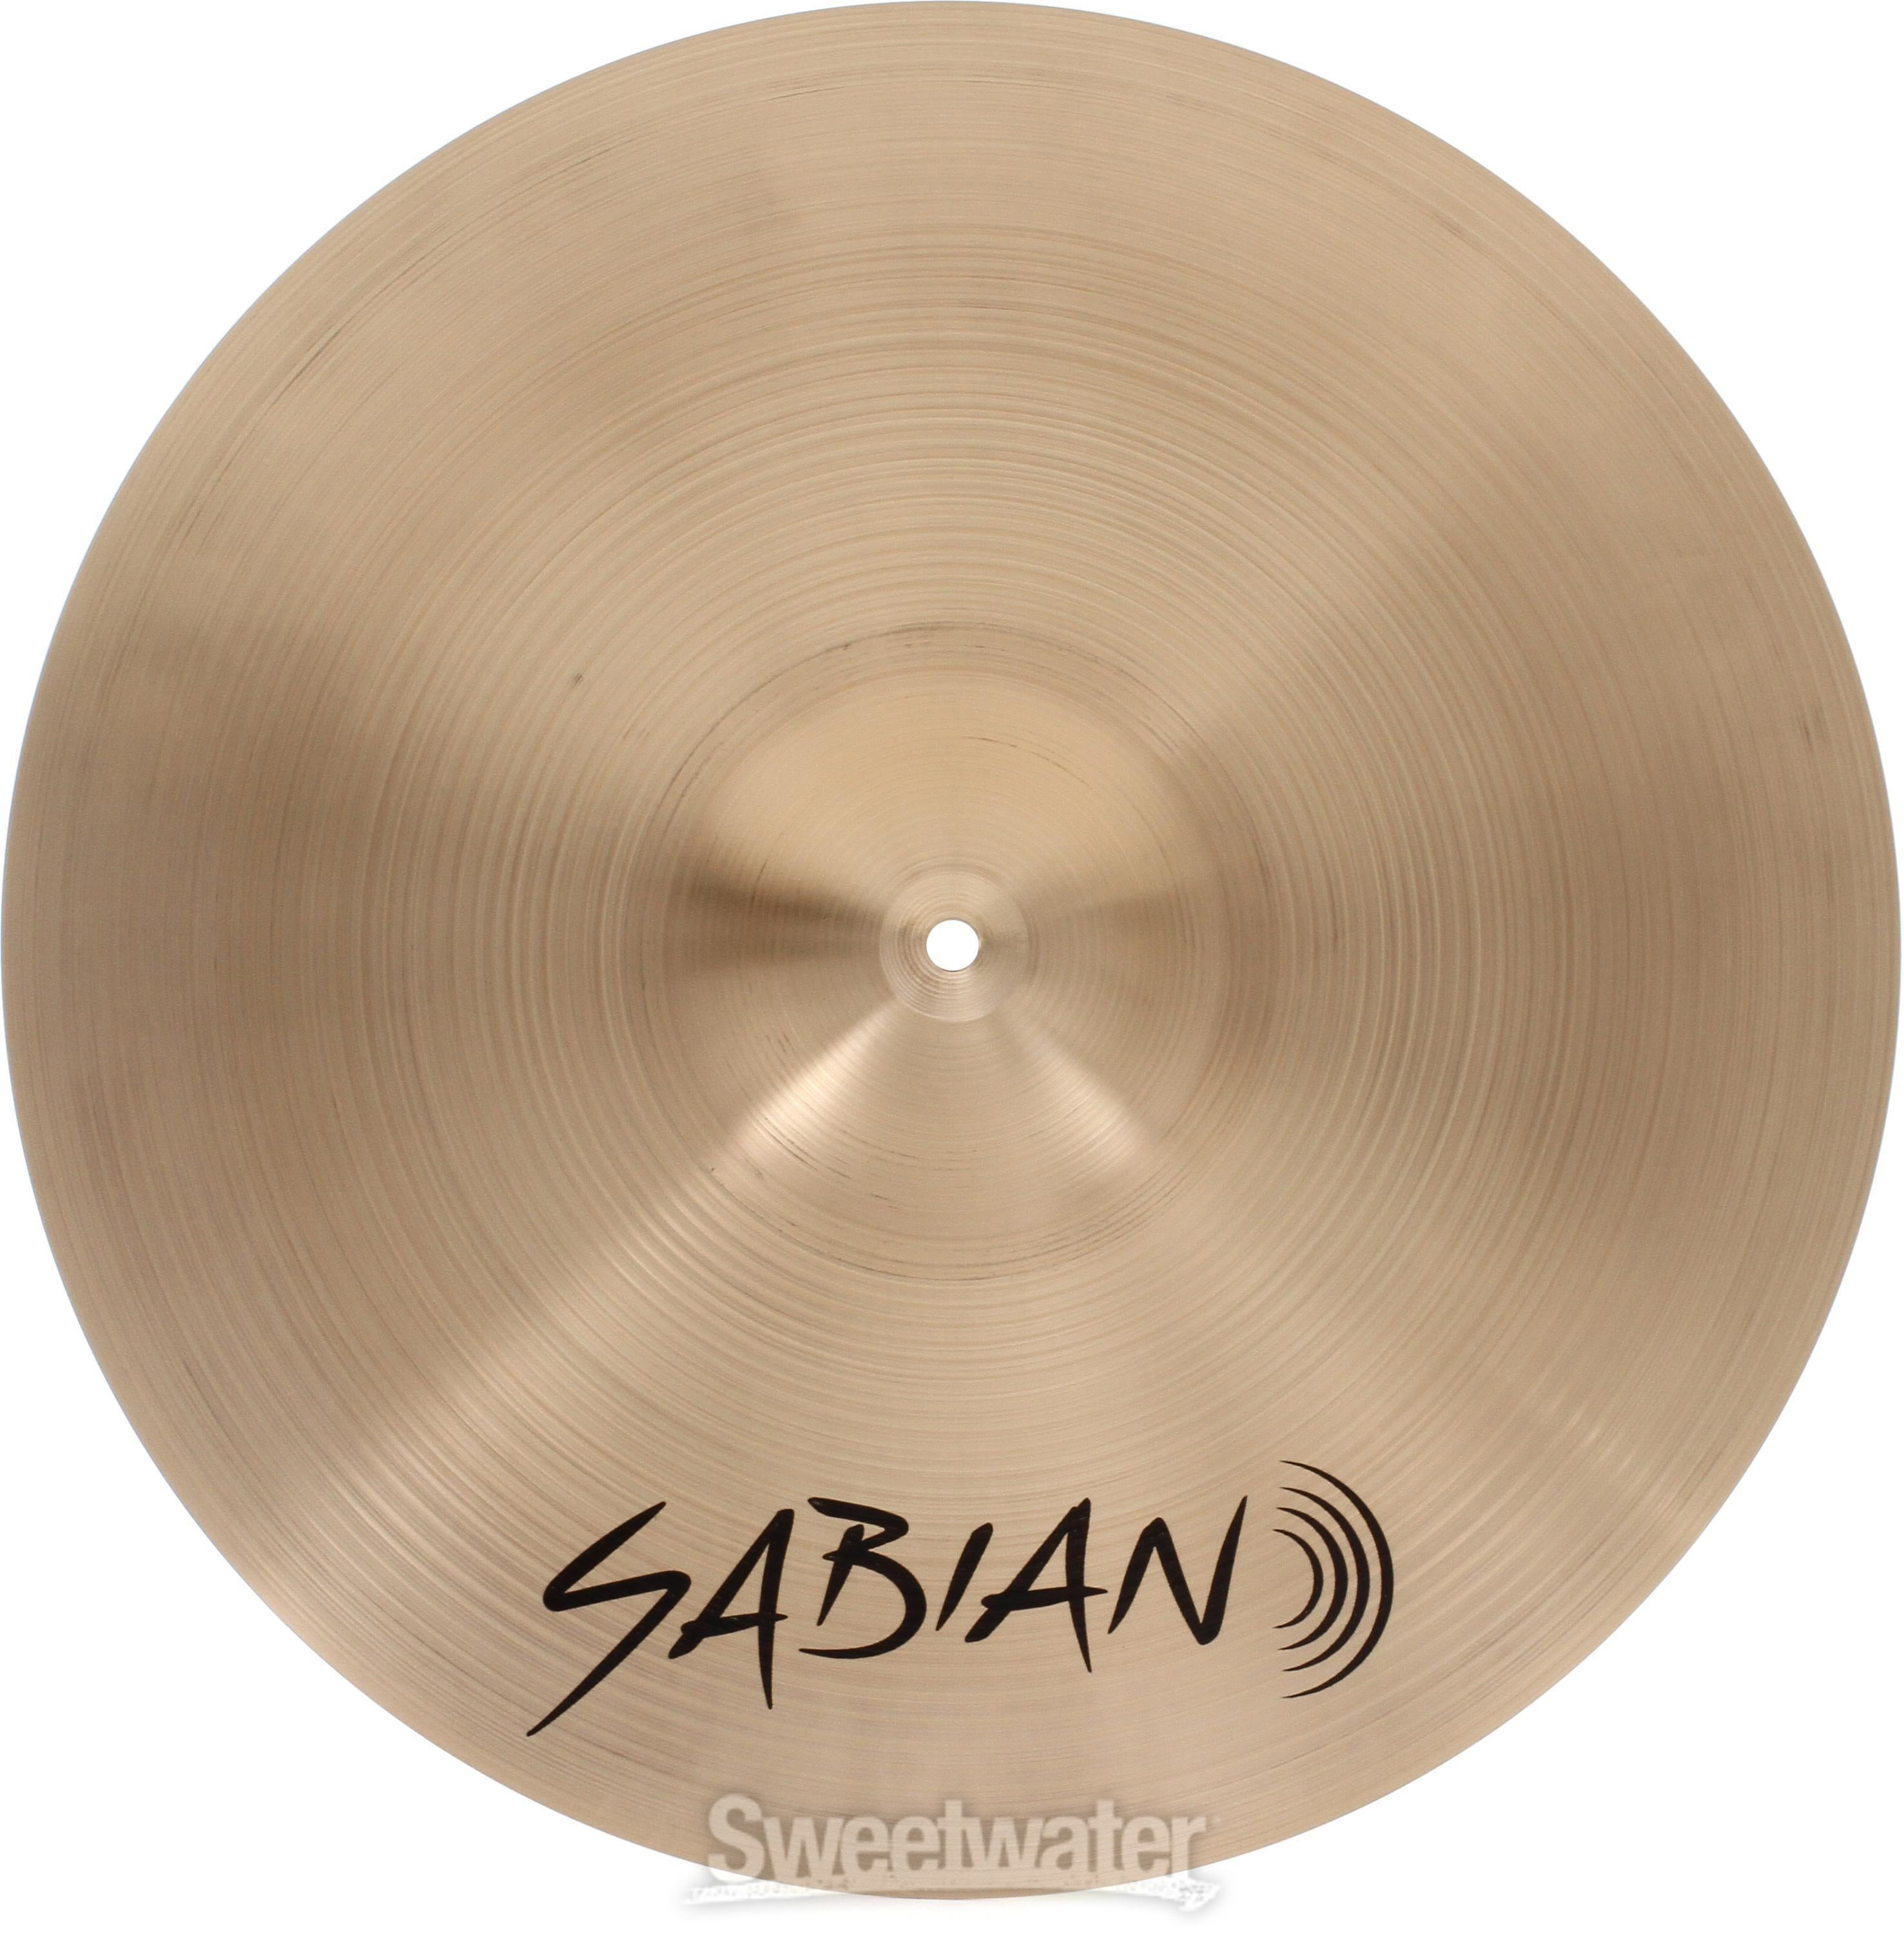 Sabian AA Medium Thin Crash Cymbal - 18 inch